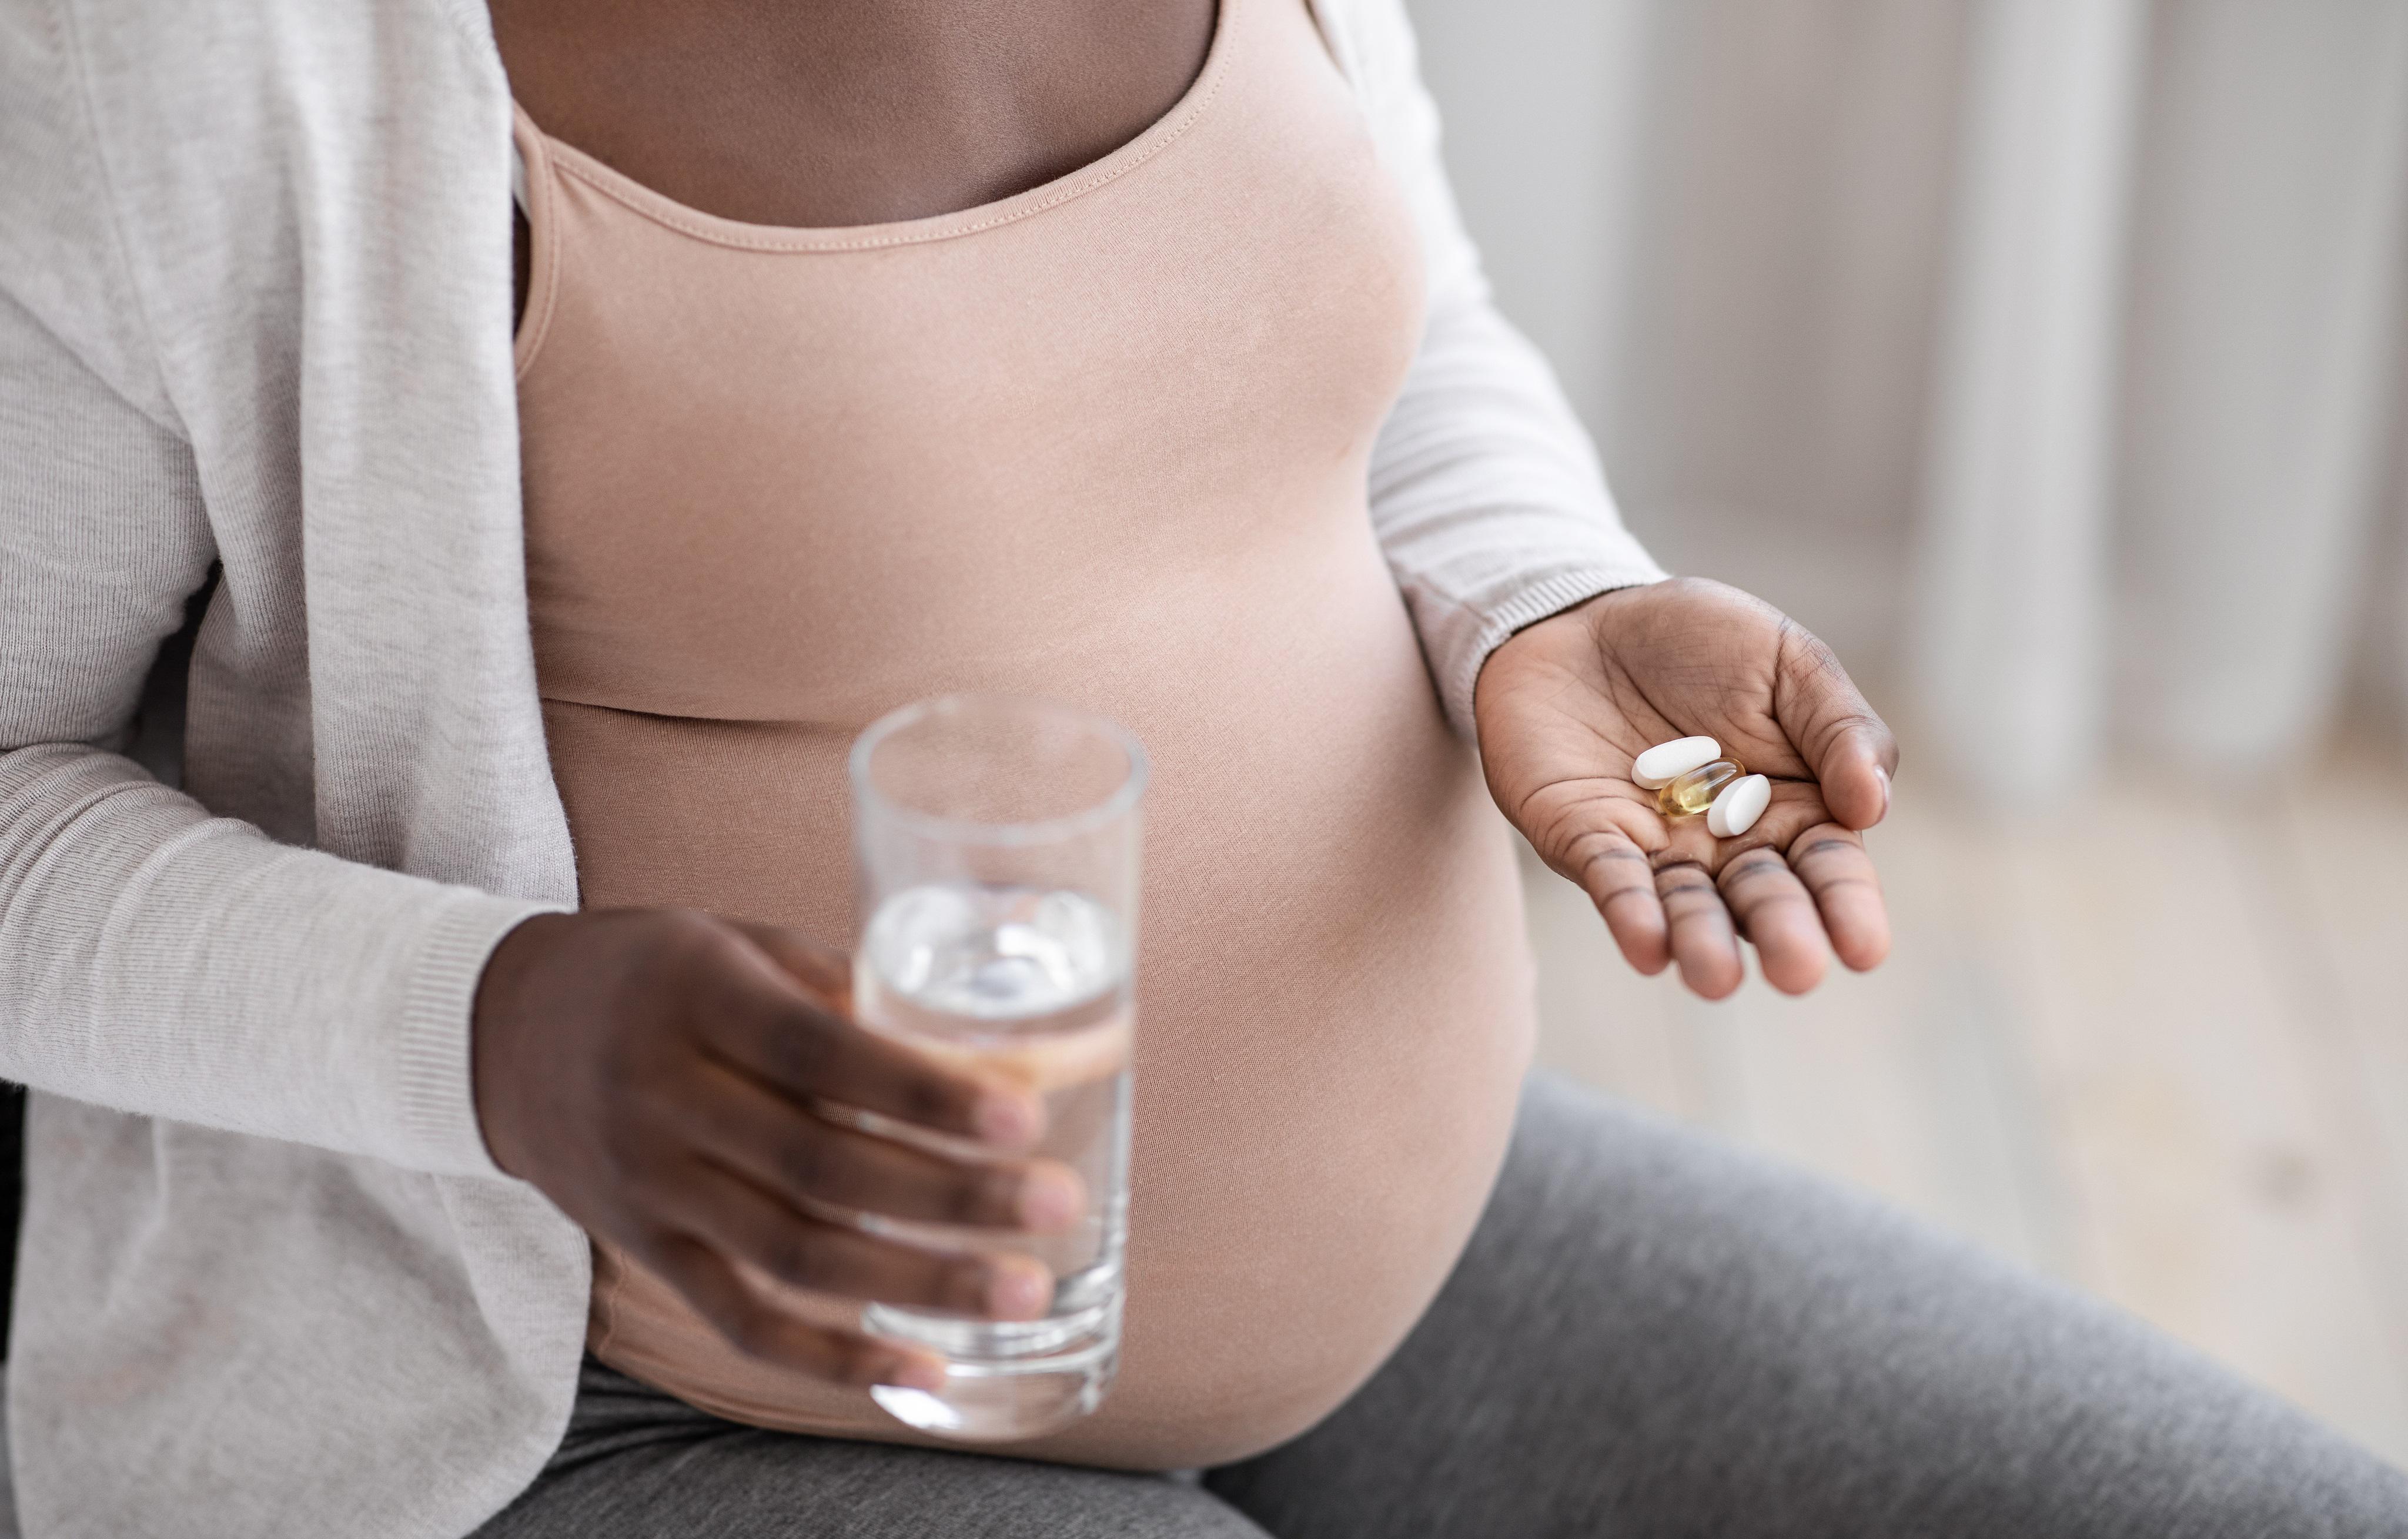 Tengo que tomar vitaminas durante el embarazo?